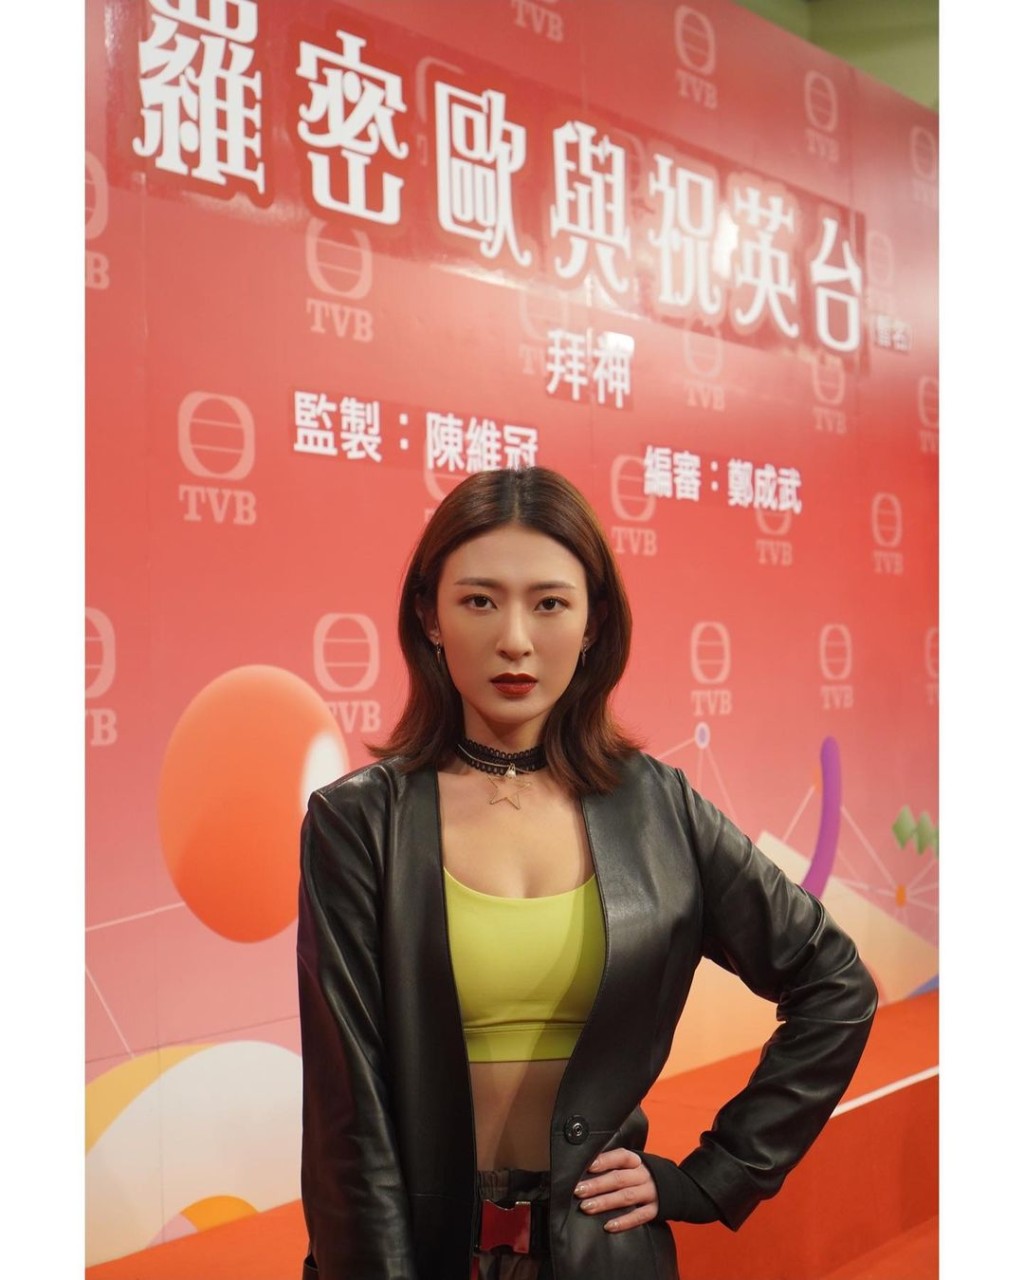 李君妍2009年毕业于第24期无綫电视艺员训练班，直到2011年因TVB招募武打演员，她曾接触过南拳，获机会参与武术选秀节目《功夫新星》。李君妍热爱运动身材一直相当fit，自从参演《心理追凶 Mind Hunter》后开始为人所知，2018年更获TVB转签经理人合约，其后参演过《她她她的少女时代》饰演健身室教练Icy更获网民大赞！